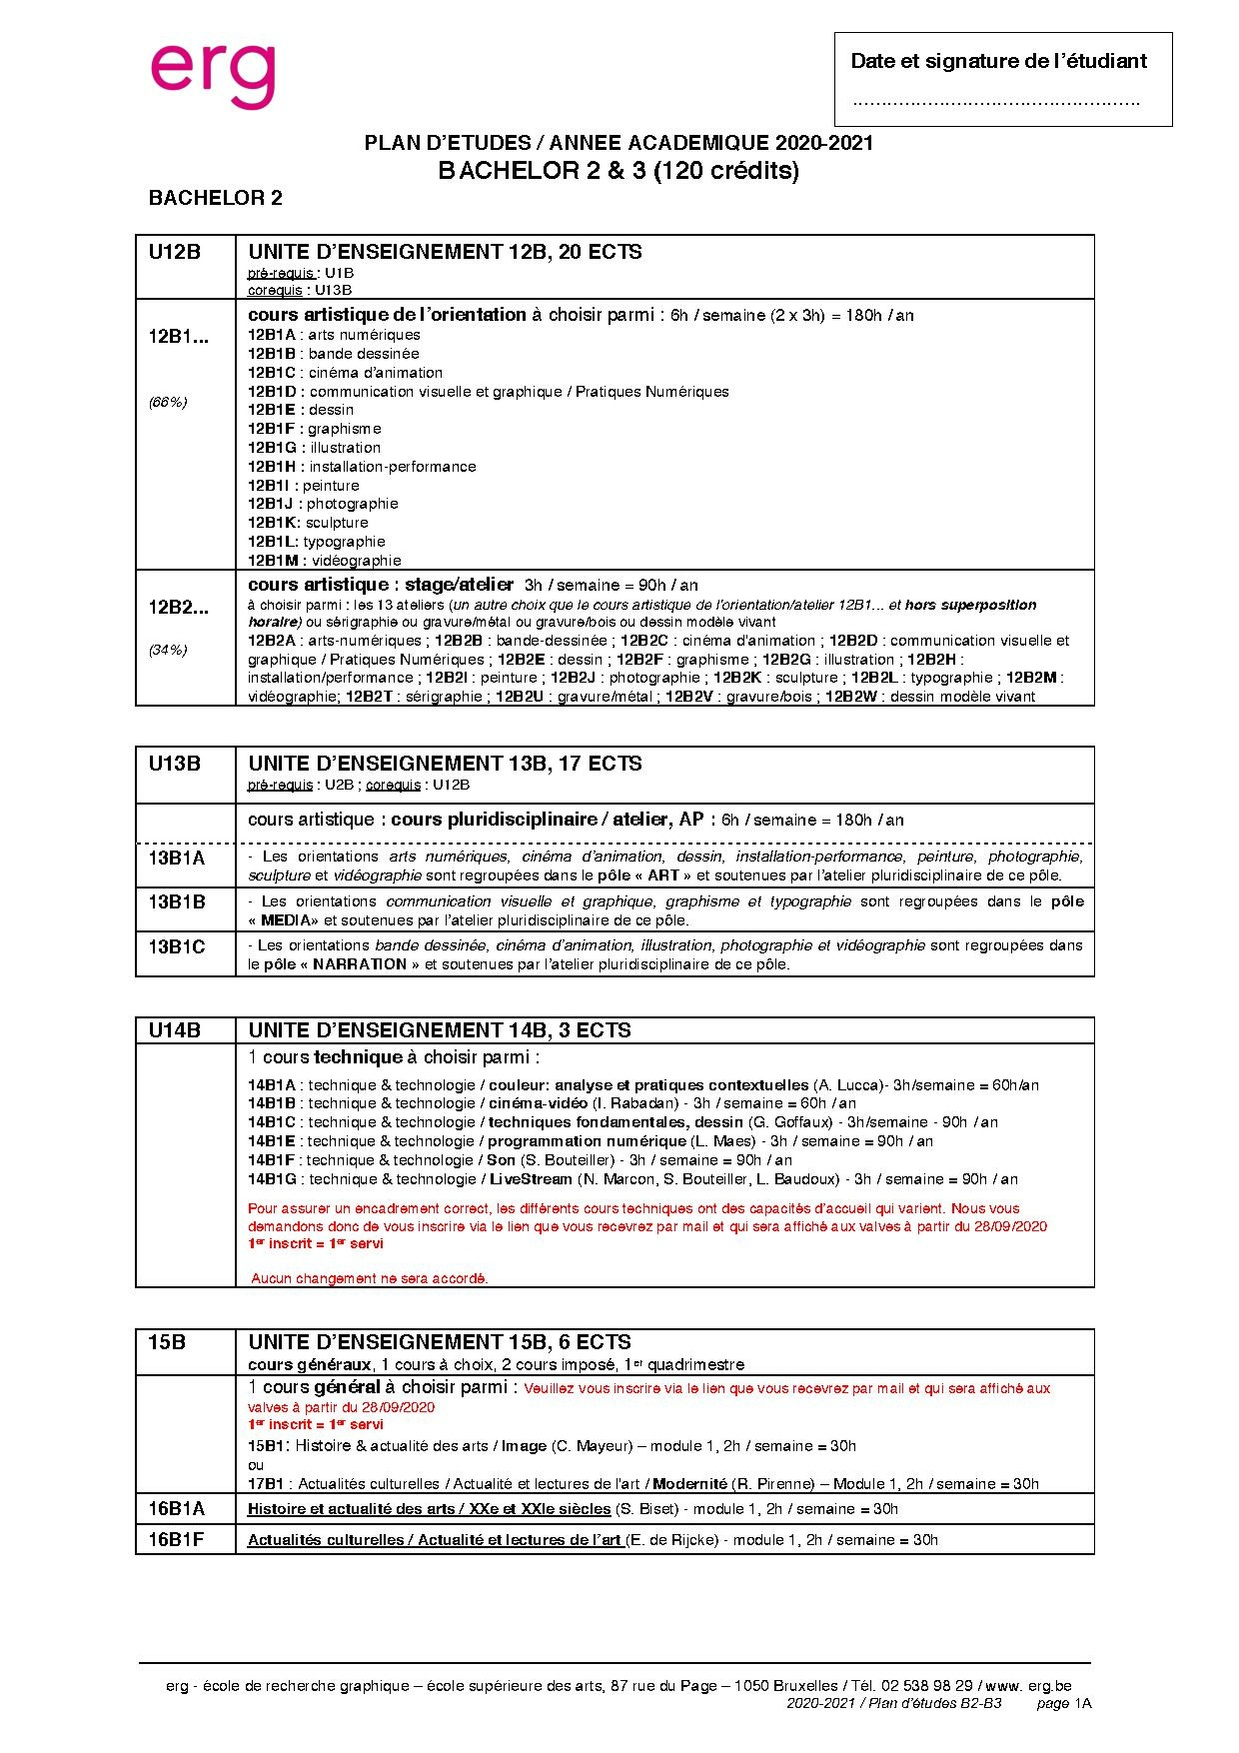 Bac2-3 PAE 2020-21.pdf